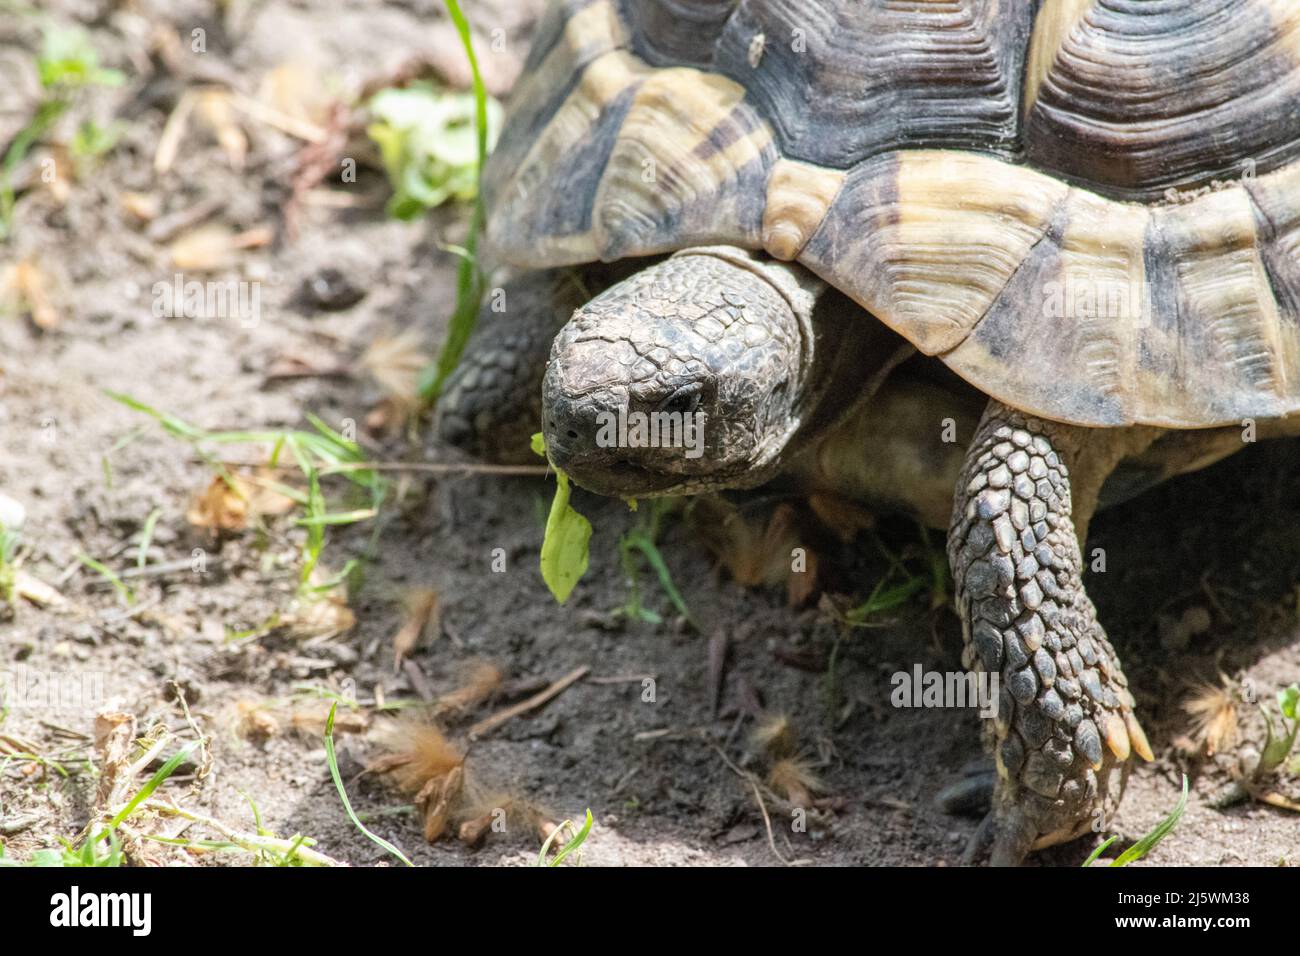 La tortue grecque (Testudo graeca), également connue sous le nom de tortue à éperon,] est une espèce de tortue de la famille des Testudinidae. Elle l'a montré Banque D'Images